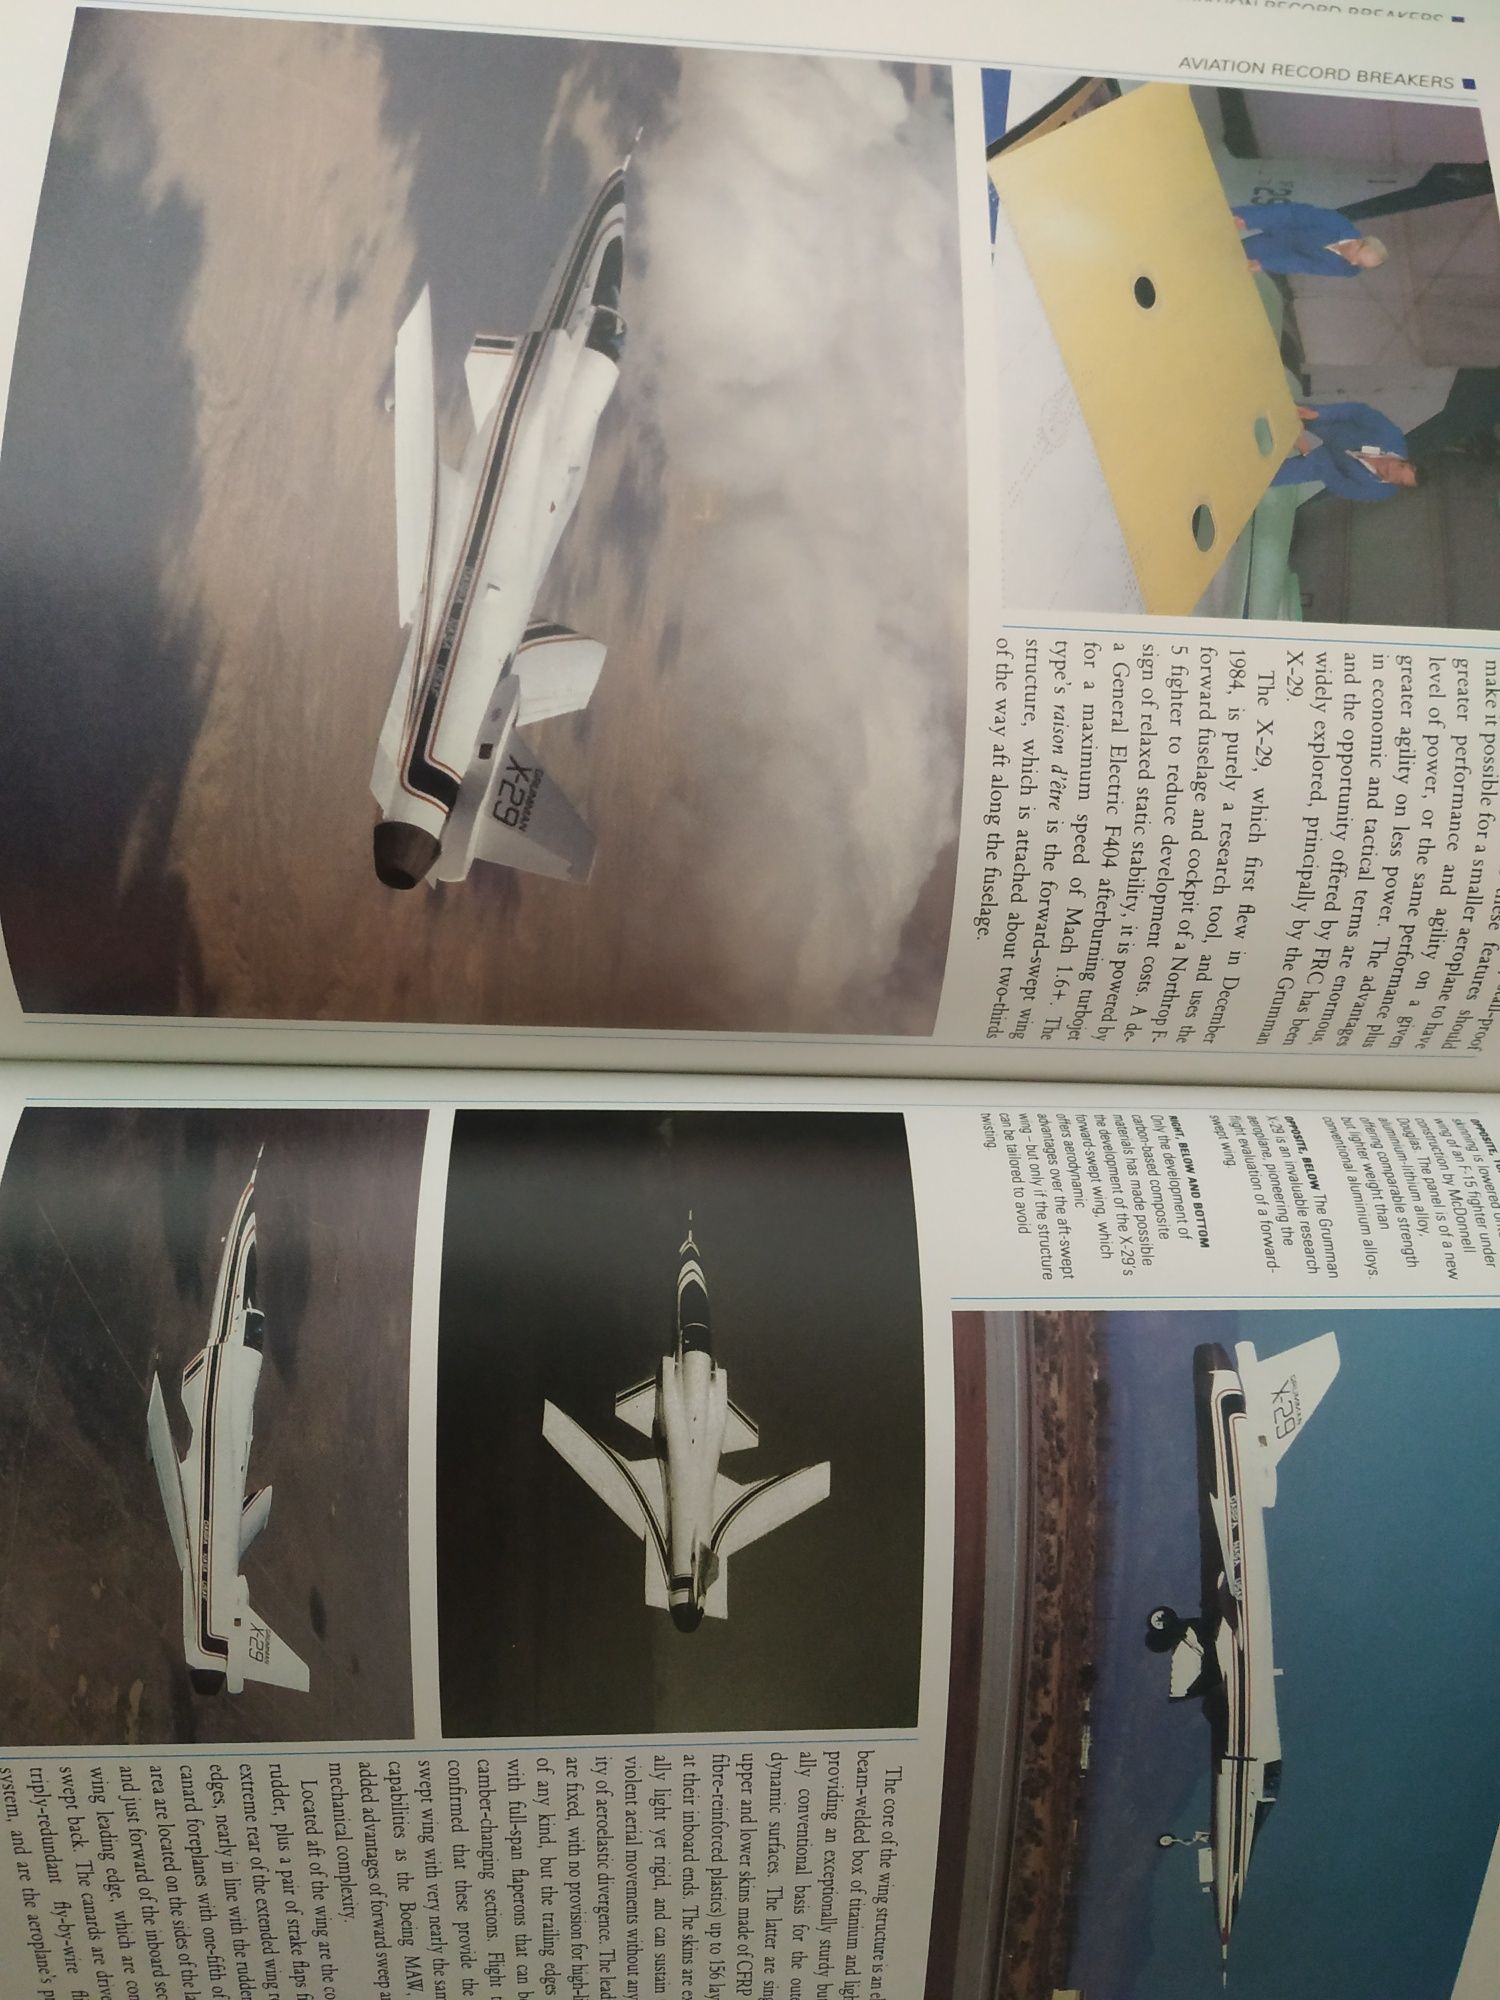 Livro aviação militar "Aviation Record Breakers"